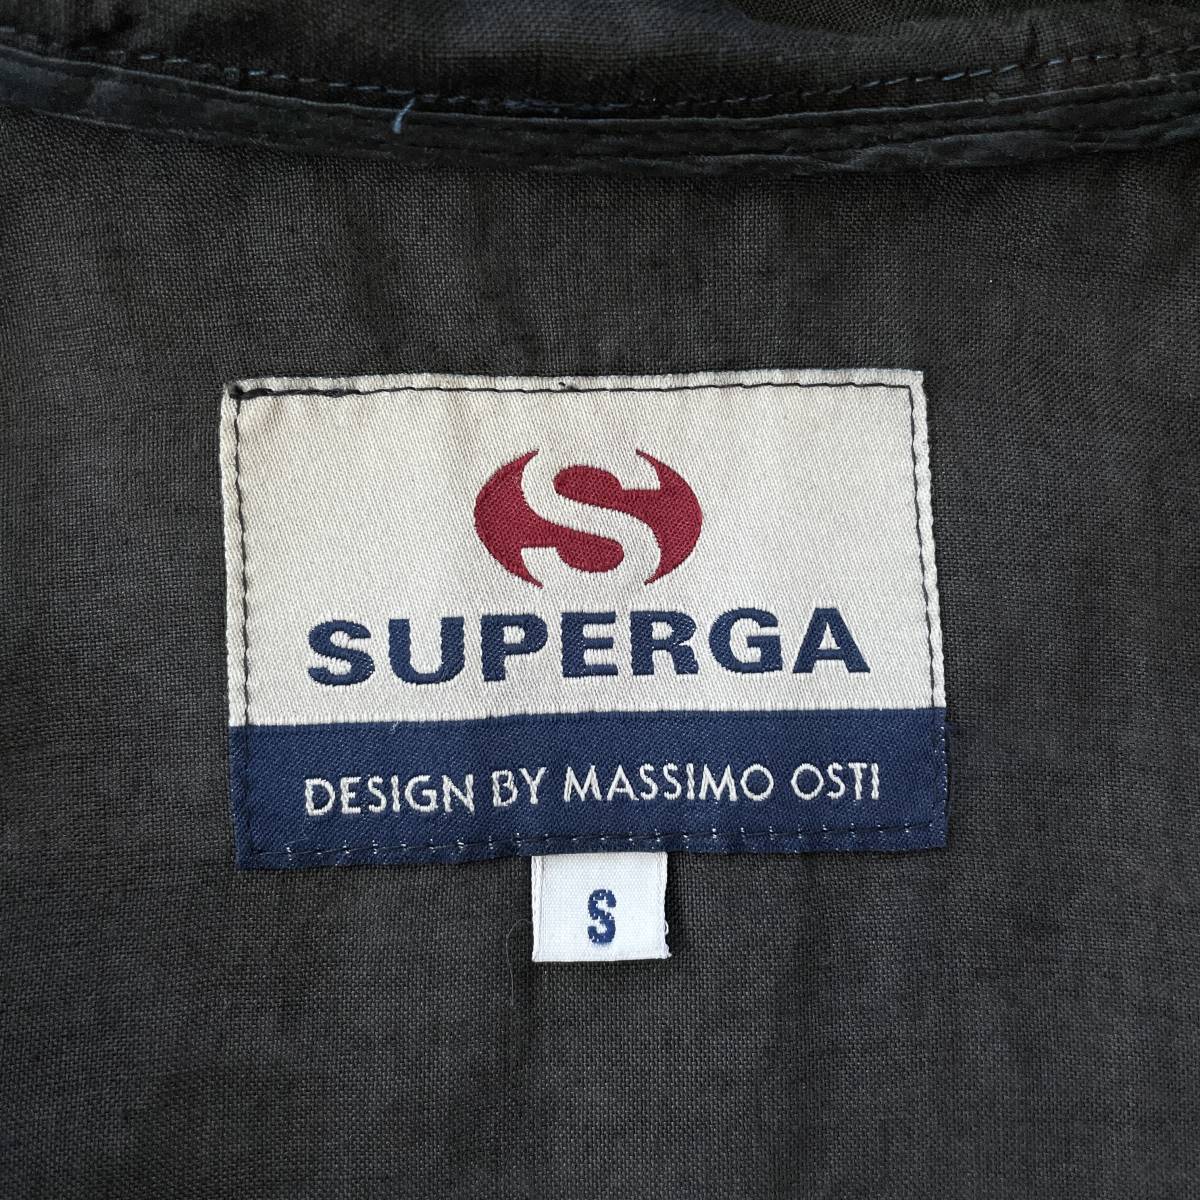 【Vintage】SUPERGA フードブルゾン MASSIMO OSTI ブラック C.P.COMPANY CPカンパニー STONE ISLAND ストーンアイランド MADE IN ITALY_画像5